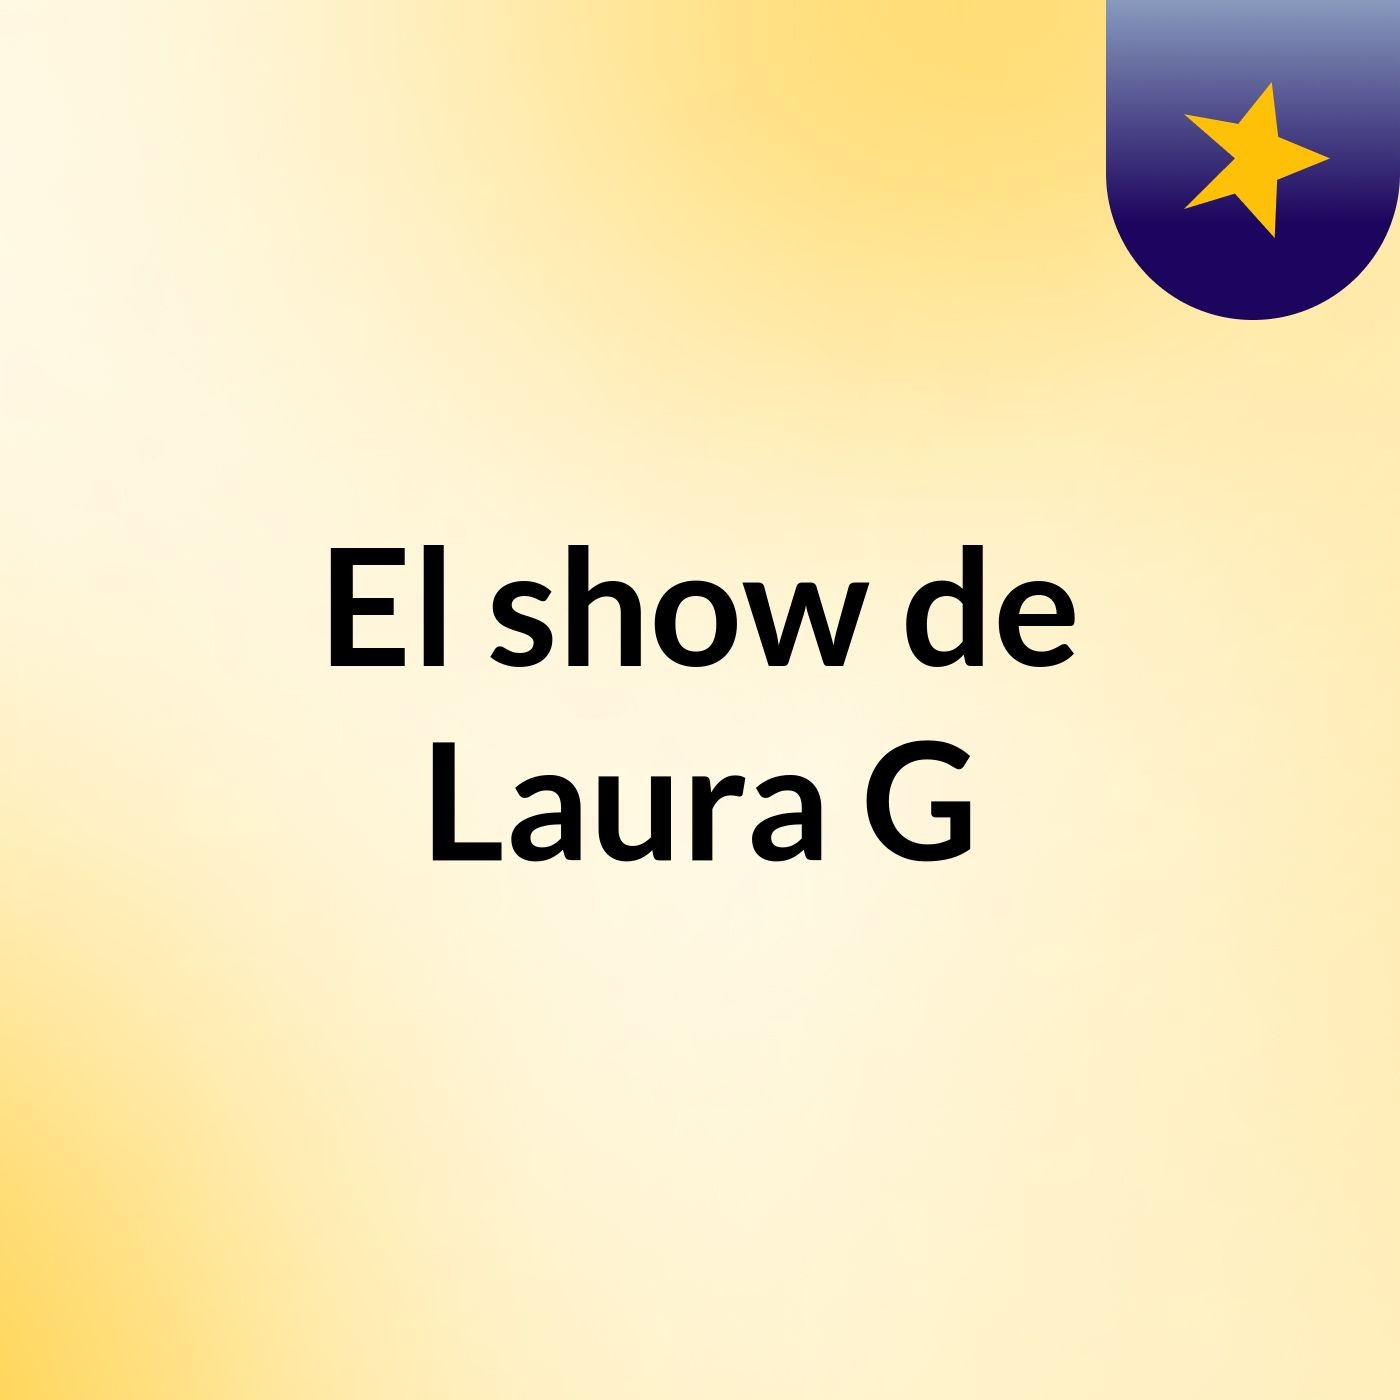 Episodio 8 - El show de Laura G